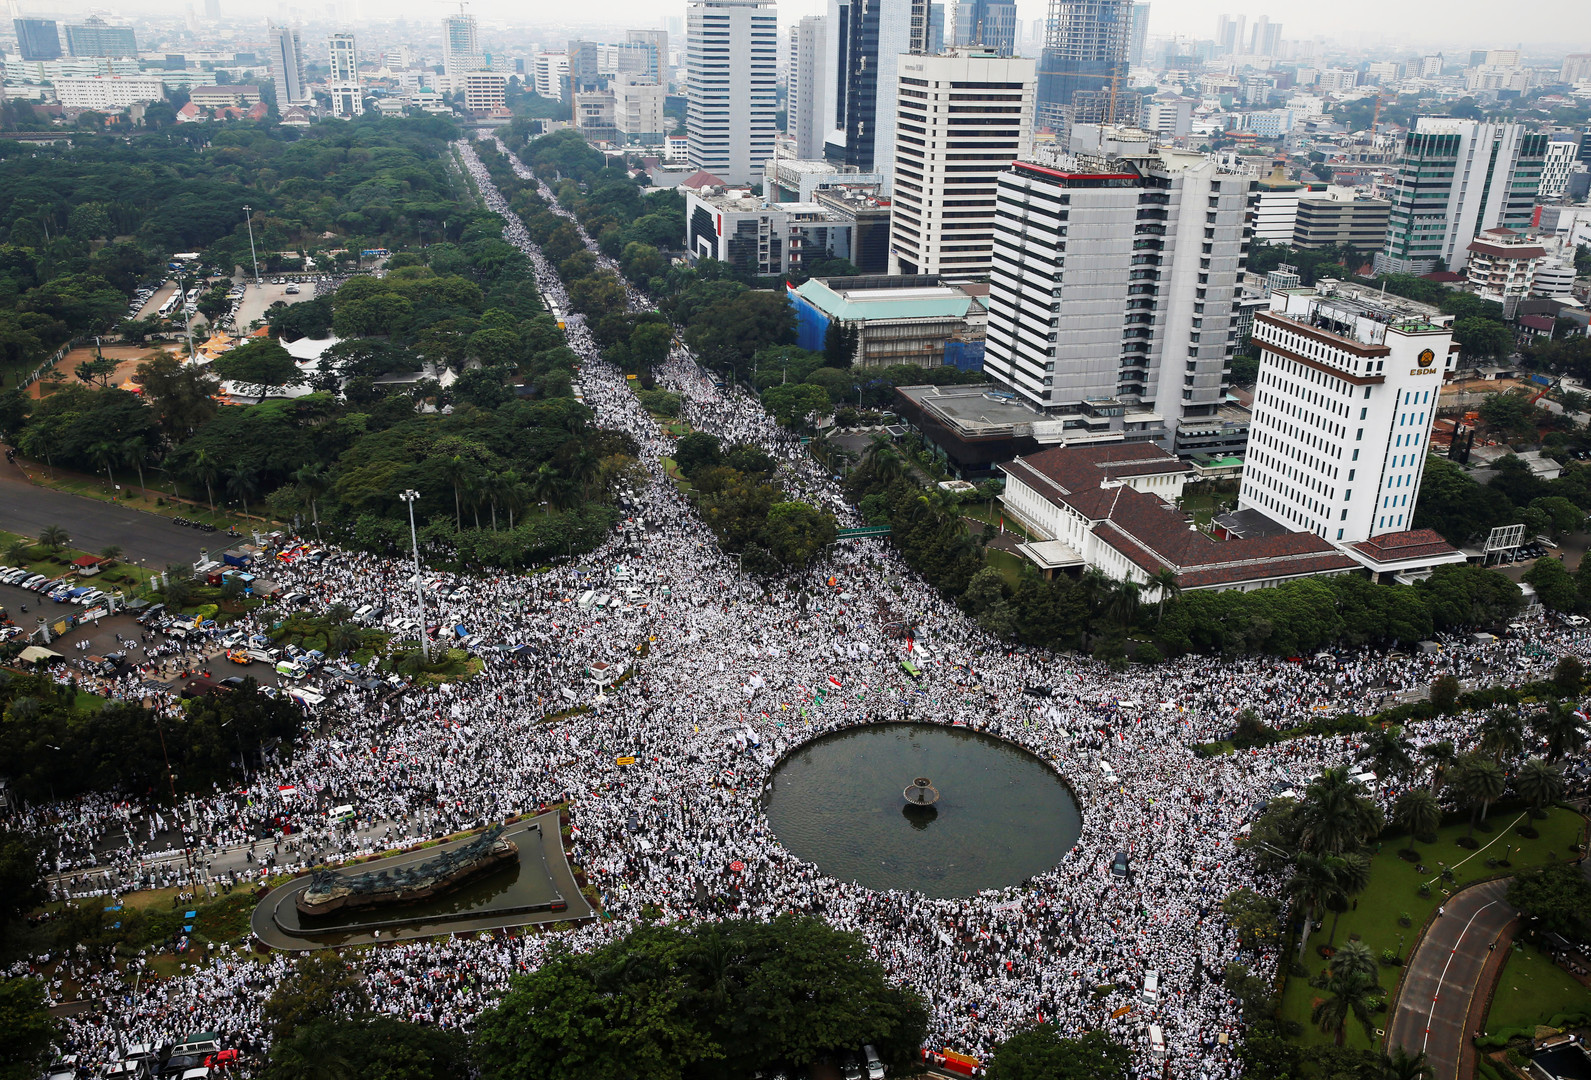 "إهانة القرآن" تتسبب بمظاهرات ضخمة في اندونيسيا ضد محافظ العاصمة